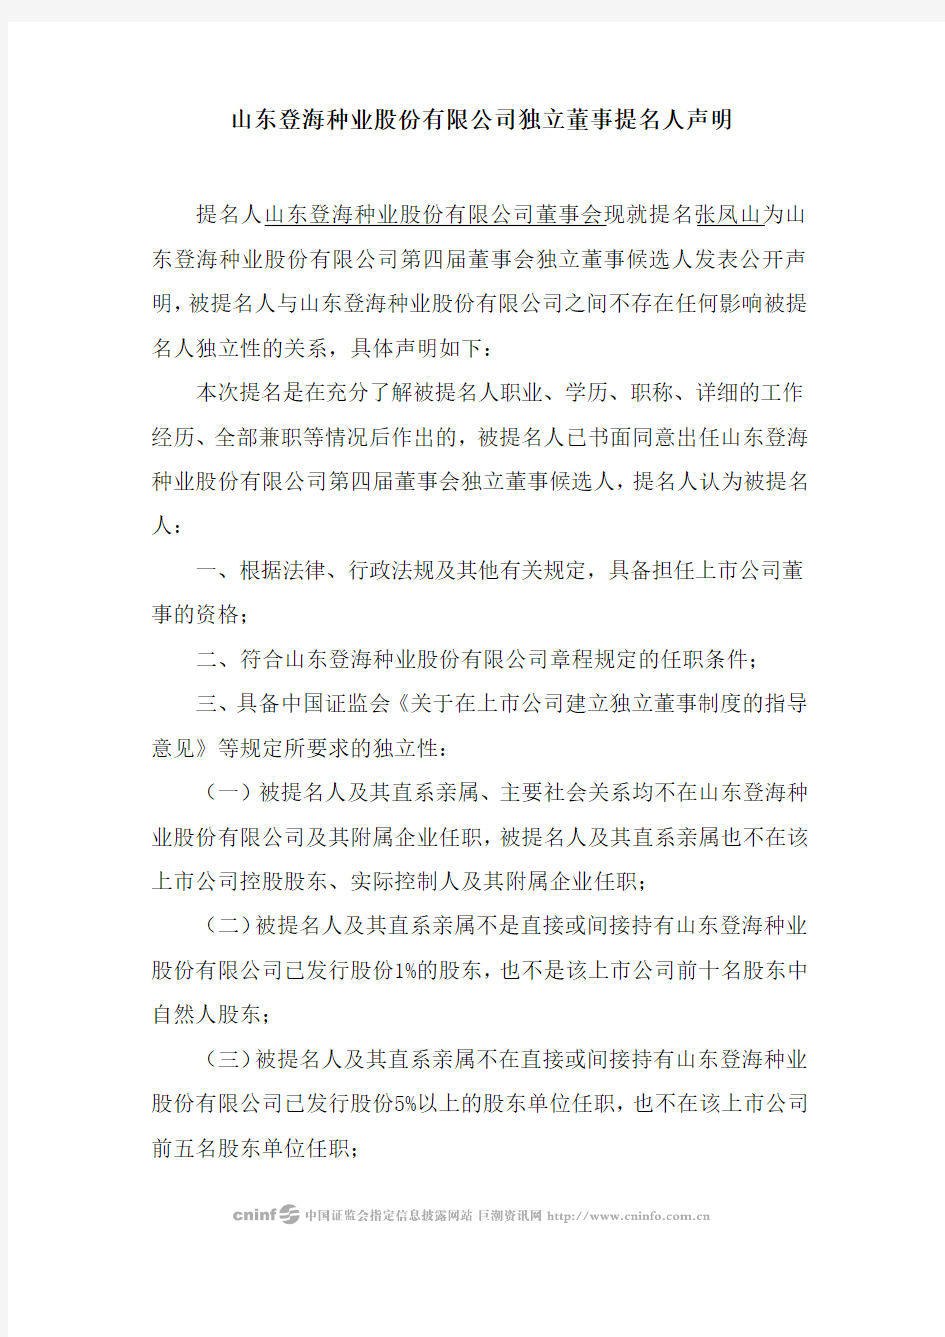 登海种业：独立董事提名人声明(张凤山) 2010-04-21